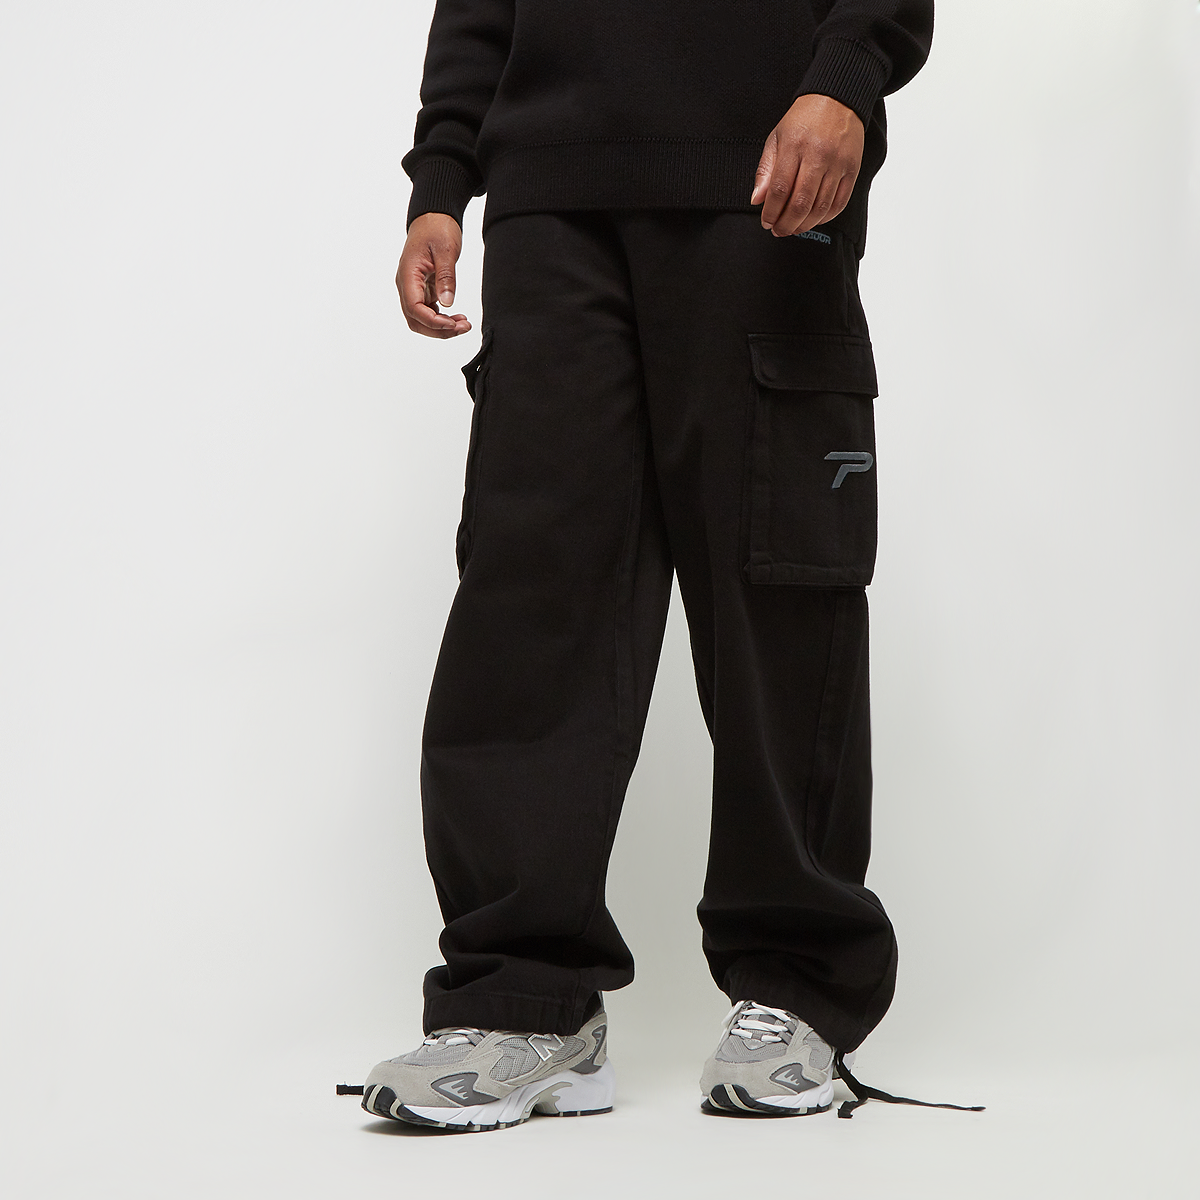 pegador paden wide cargo pants, pantalons cargo, homme, black, taille: xl, tailles disponibles:xl